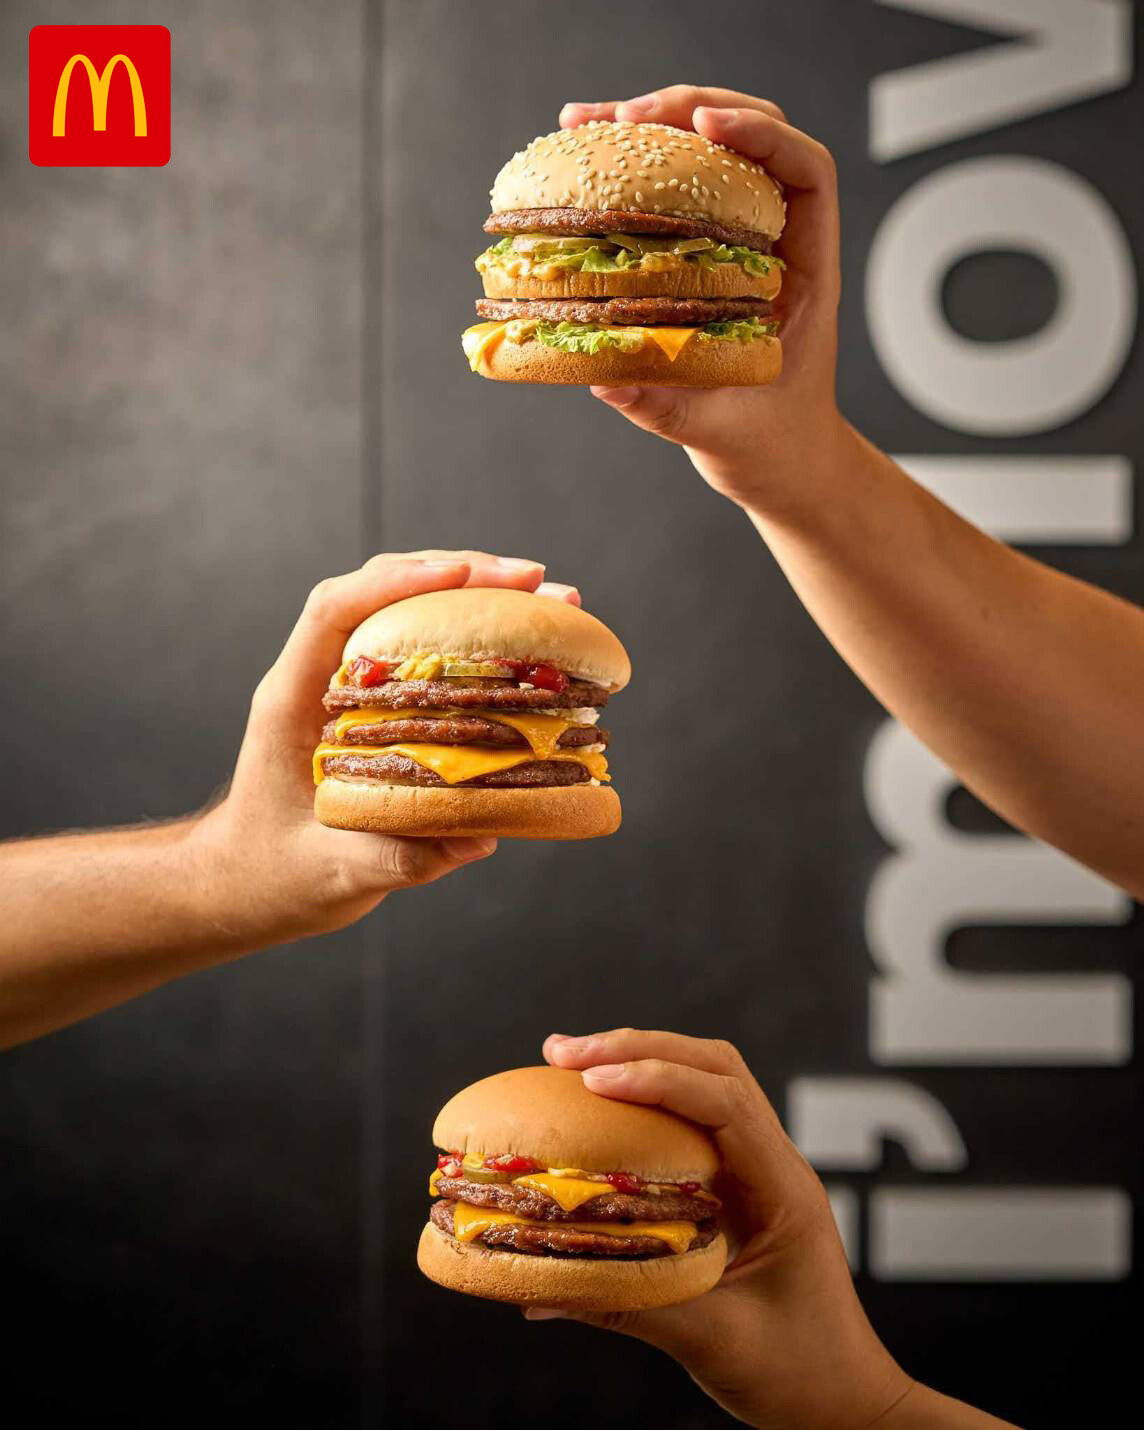 แมคโดนัลด์จัดเทศกาล Beef Burger Fest กับเบอร์เกอร์ "เนื้อๆ เน้นๆ" จุใจกับเนื้อวัว 100%คุณภาพดีนำเข้าจากออสเตรเลีย เริ่ม 17 พ.ย.นี้ พร้อมกันทั่วประเทศ